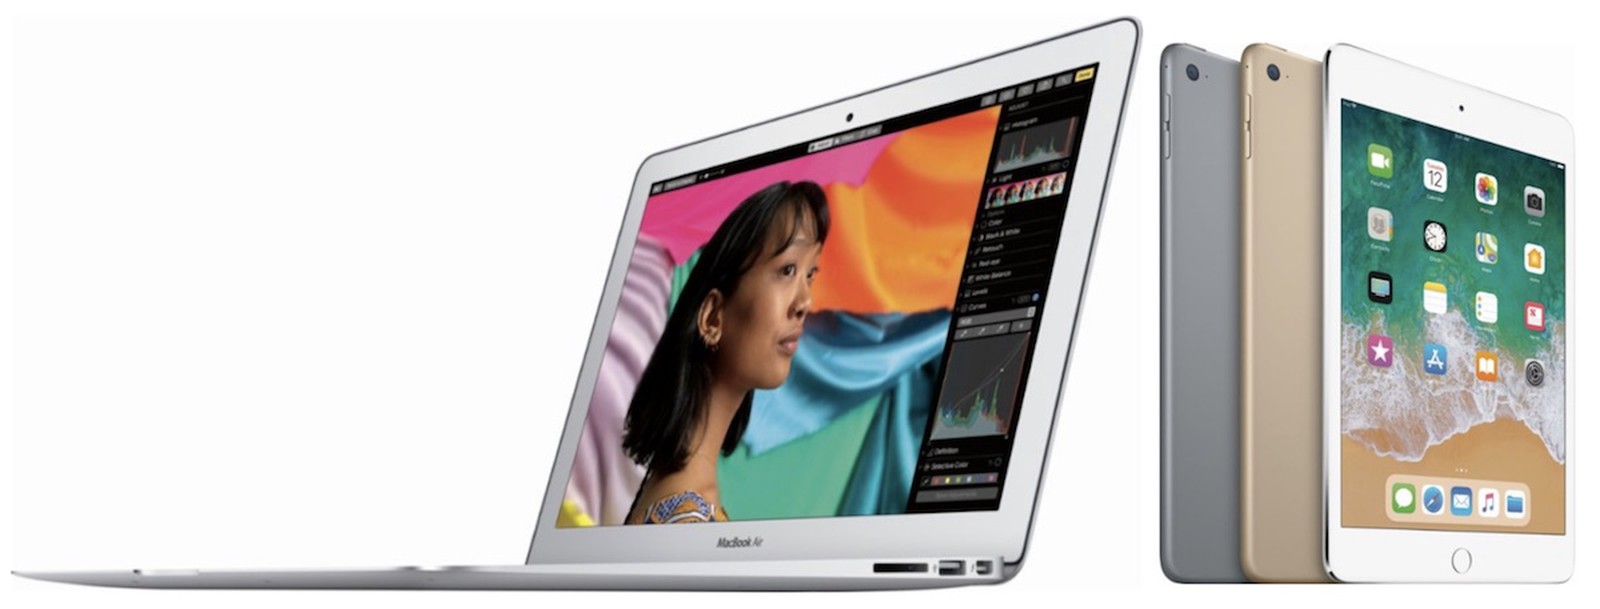 macbook air best buy sale